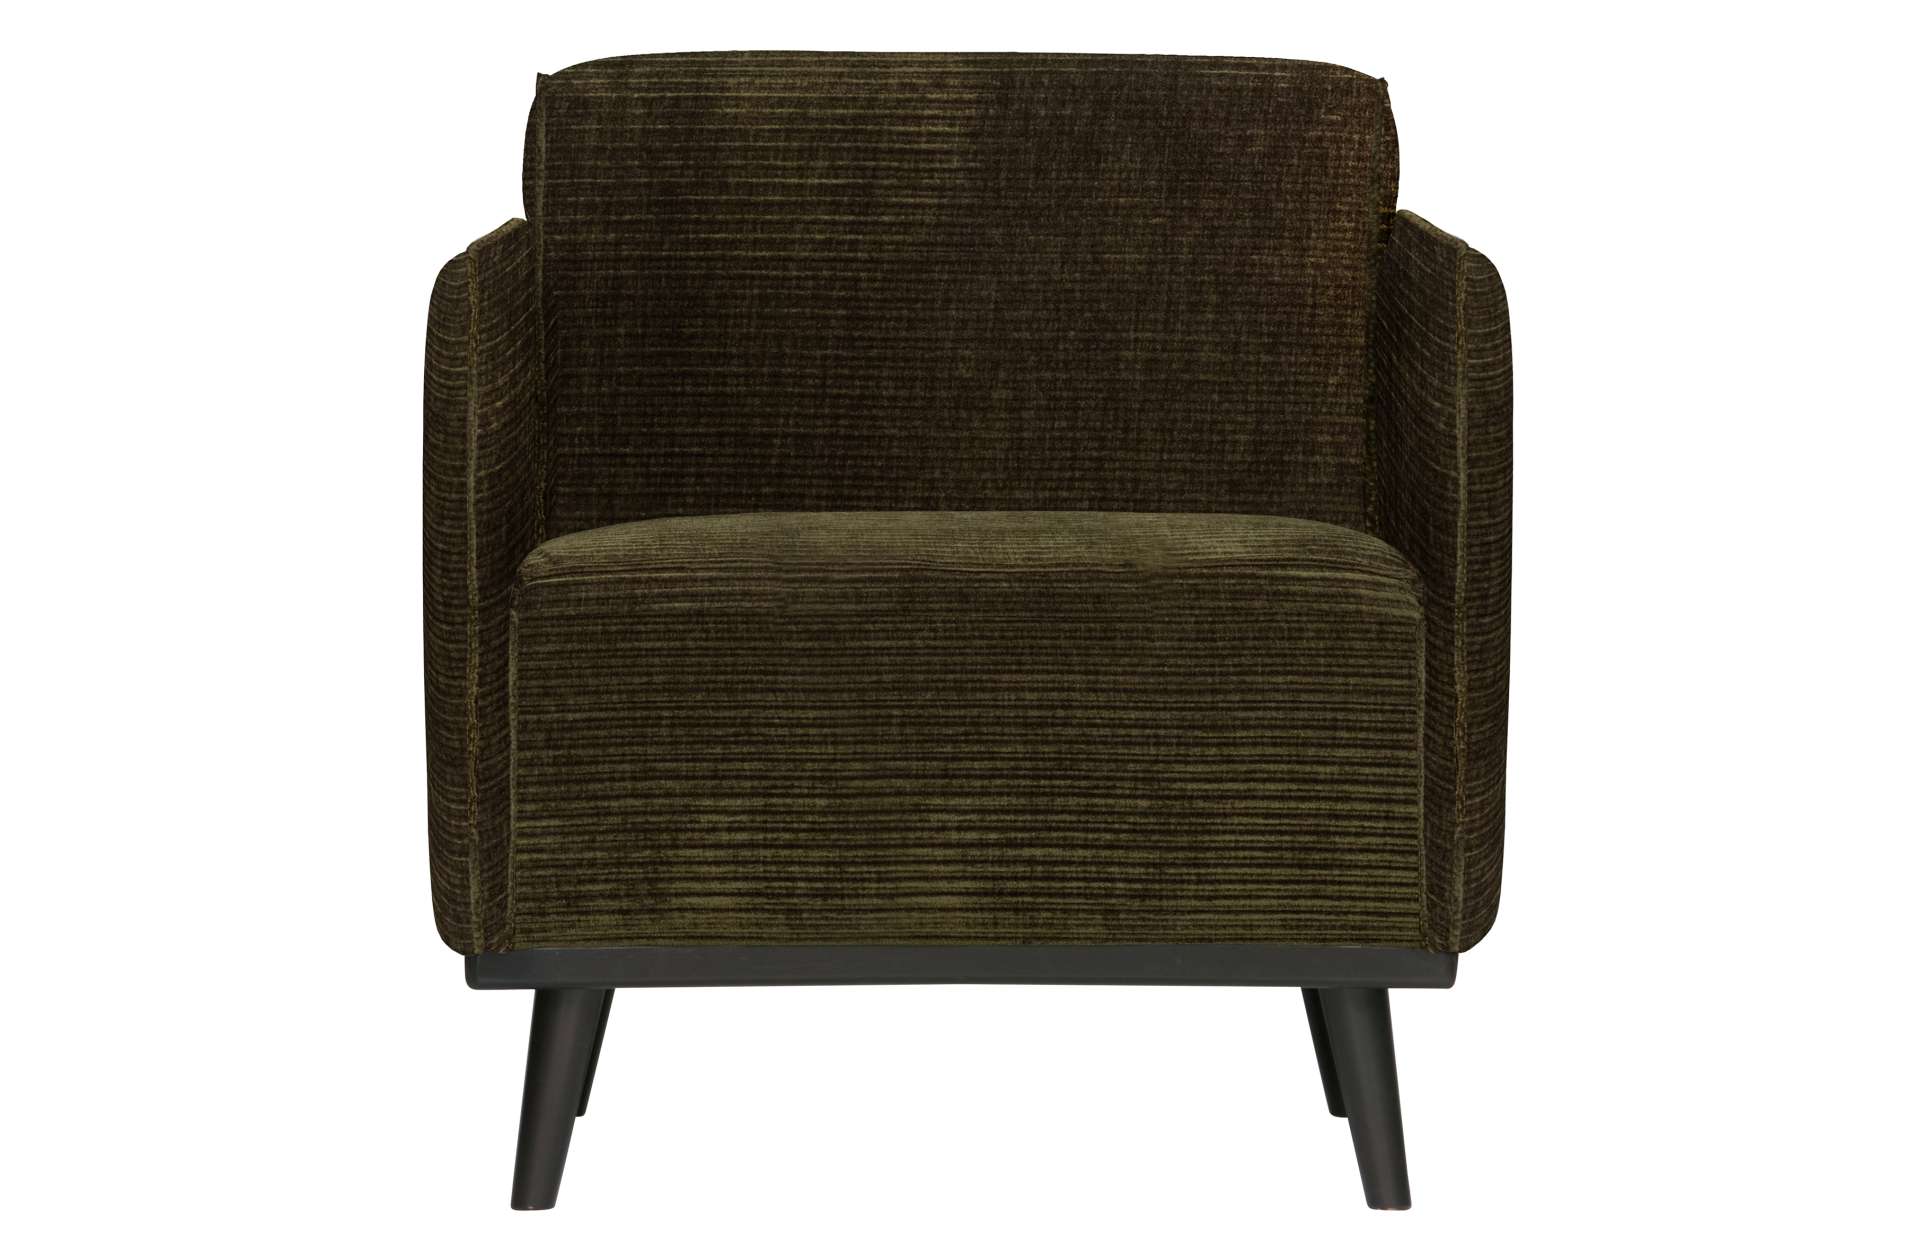 Der Sessel Statement überzeugt mit seinem modernen Design. Gefertigt wurde er aus gewebten Jacquard, welches einen Olive Farbton besitzen. Das Gestell ist aus Birkenholz und hat eine schwarze Farbe. Der Hocker hat eine Sitzhöhe von 46 cm.